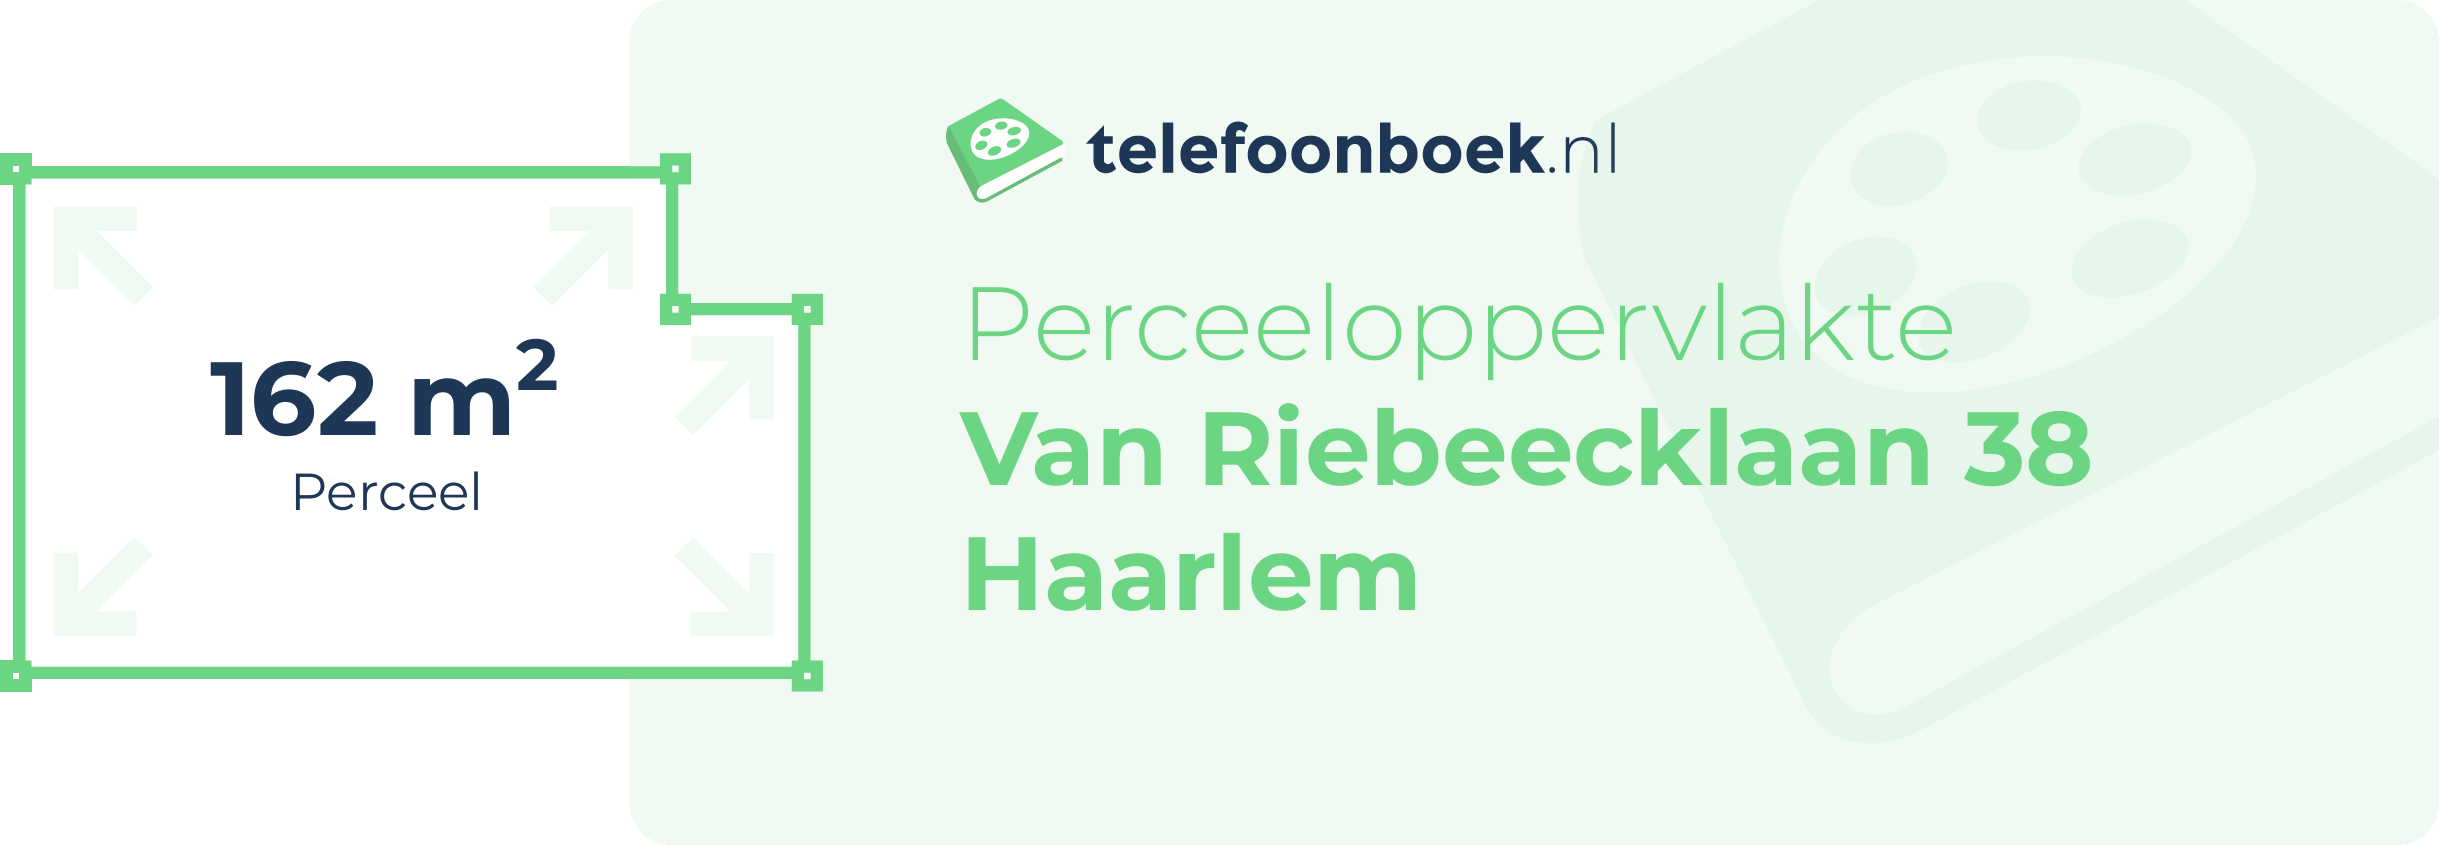 Perceeloppervlakte Van Riebeecklaan 38 Haarlem